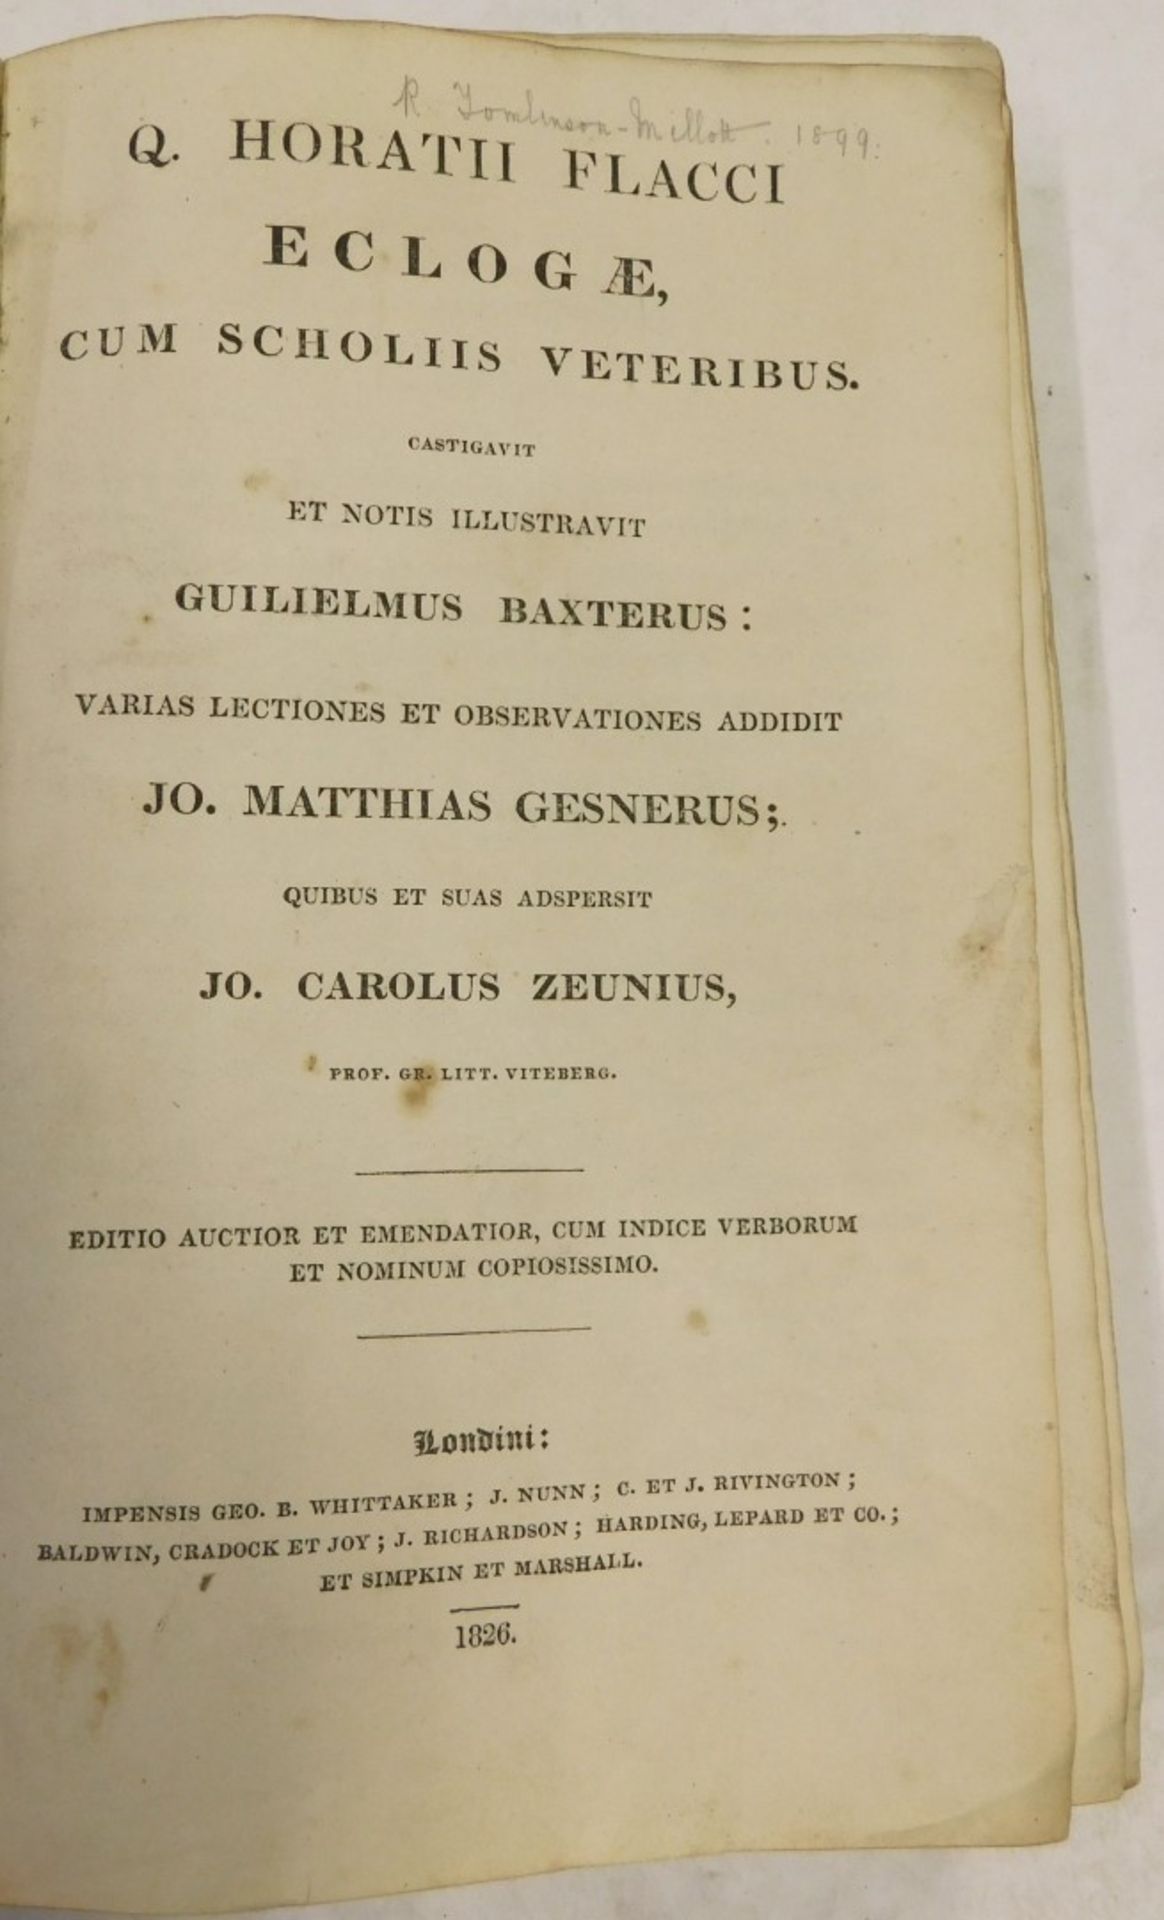 Book, Zeunius (Carolus) Q.Horath Flacci Eclogae Cum Scholiis Veteribus, London 1826, calf boards. - Image 2 of 2